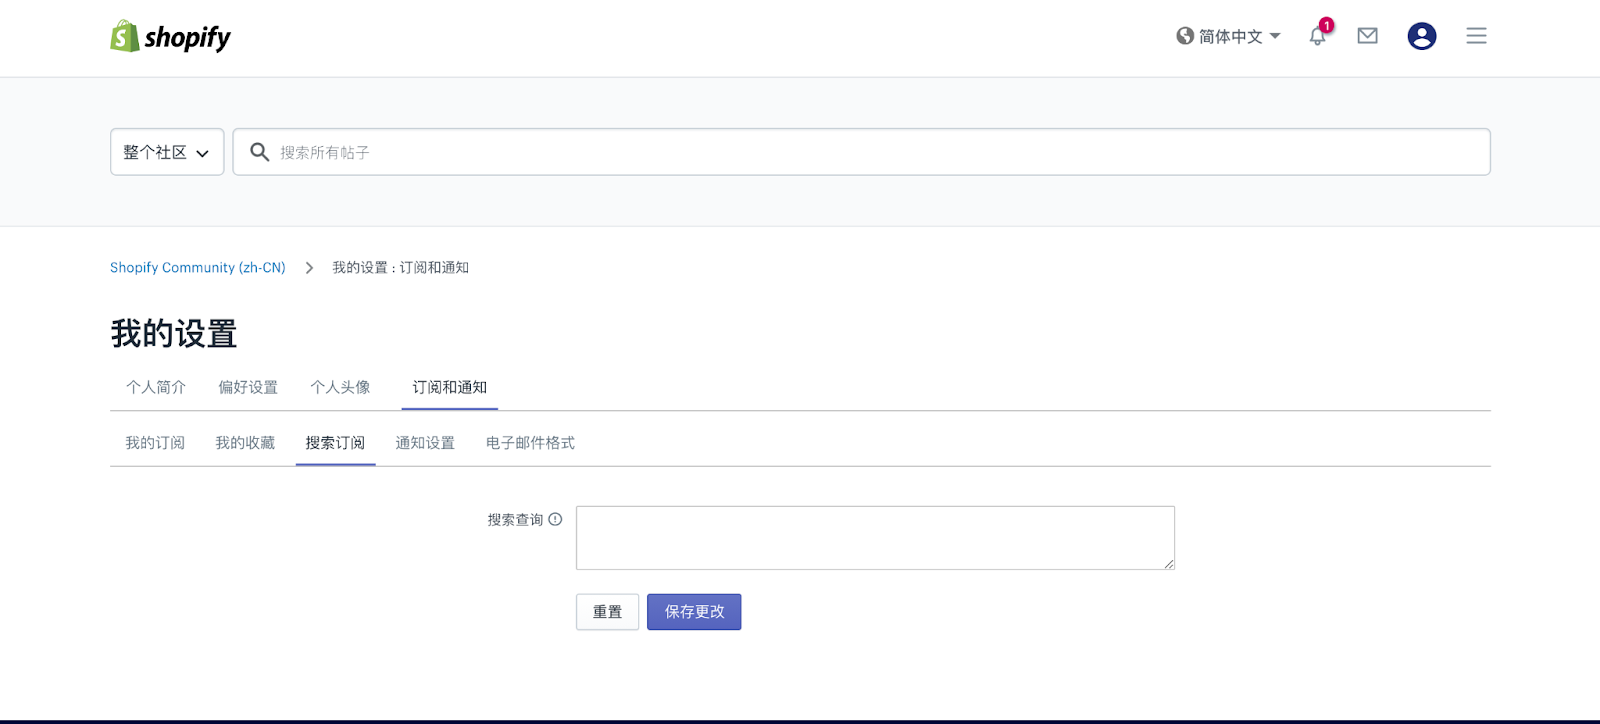 Shopify官方中文社区论坛的“搜索和关键词订阅”功能